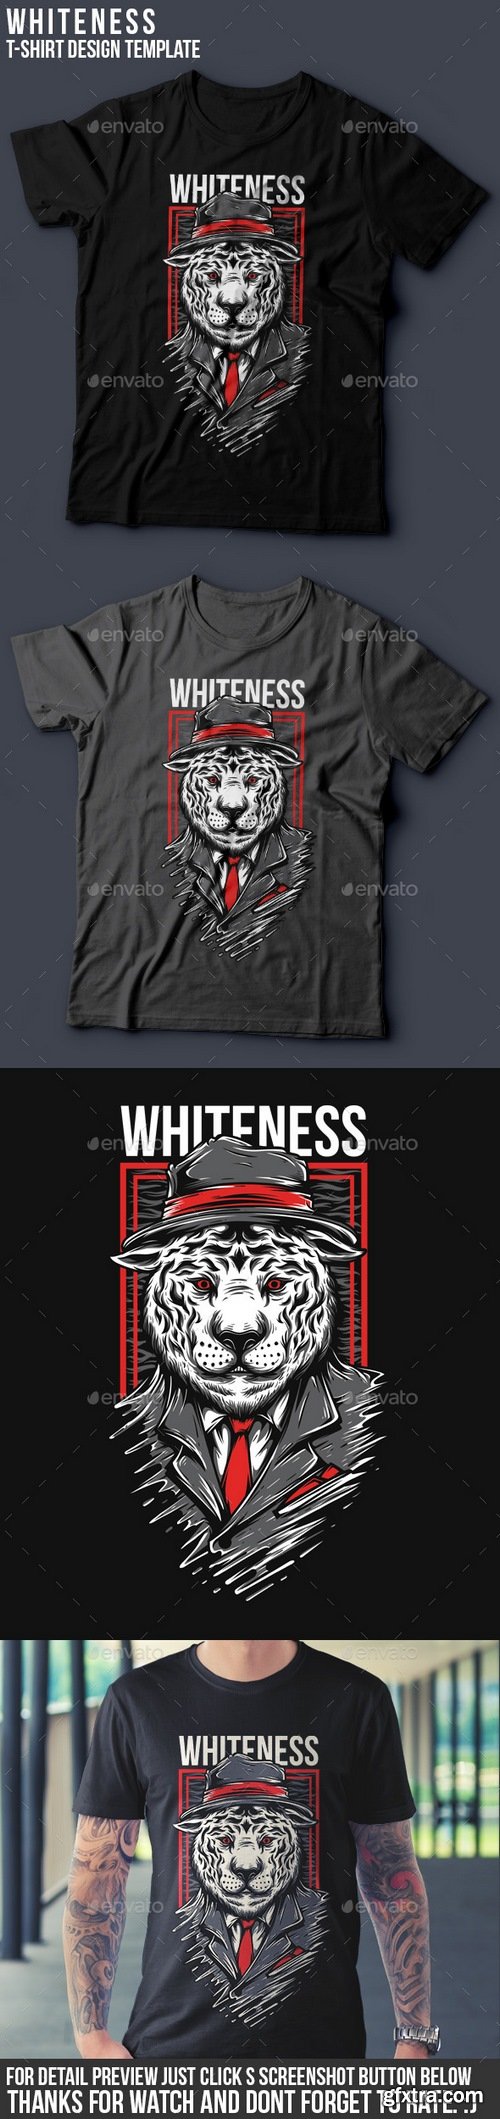 Graphicriver - Whiteness T-Shirt Design 16417764